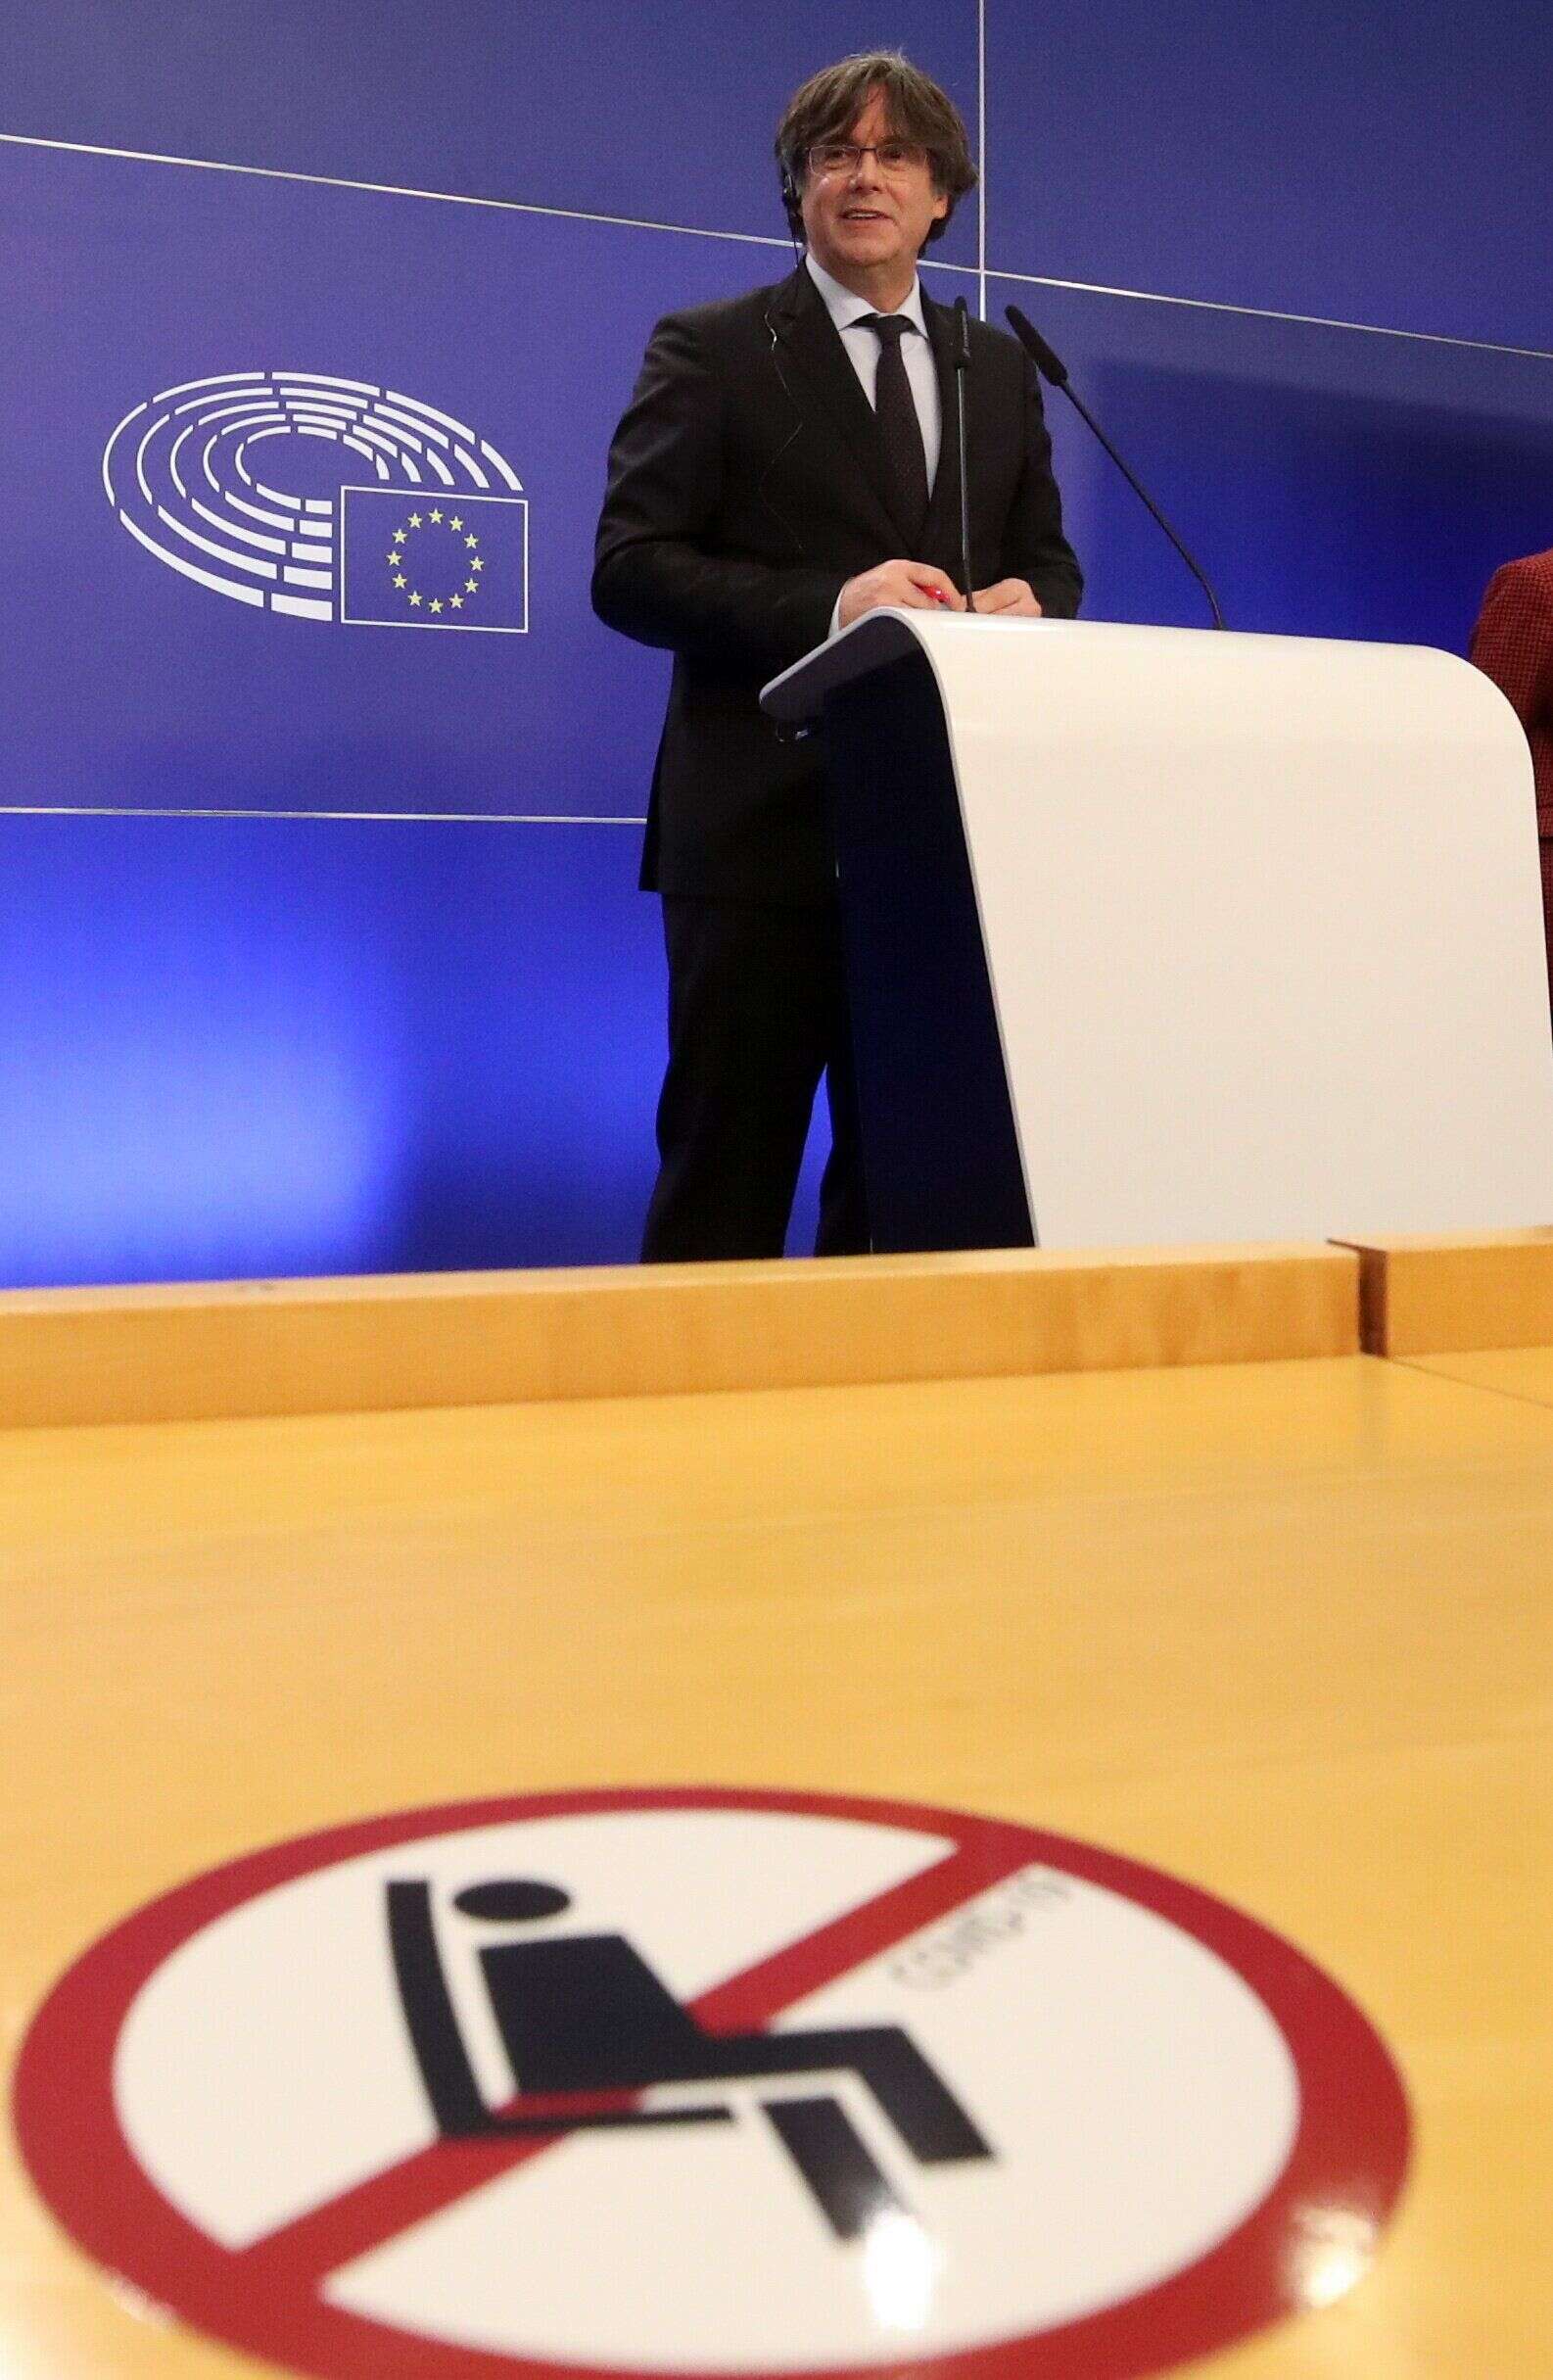 Le leader indépendantiste catalan Carles Puigdemont arrêté en Italie (photo du 9 mars 2021 à Bruxelles)